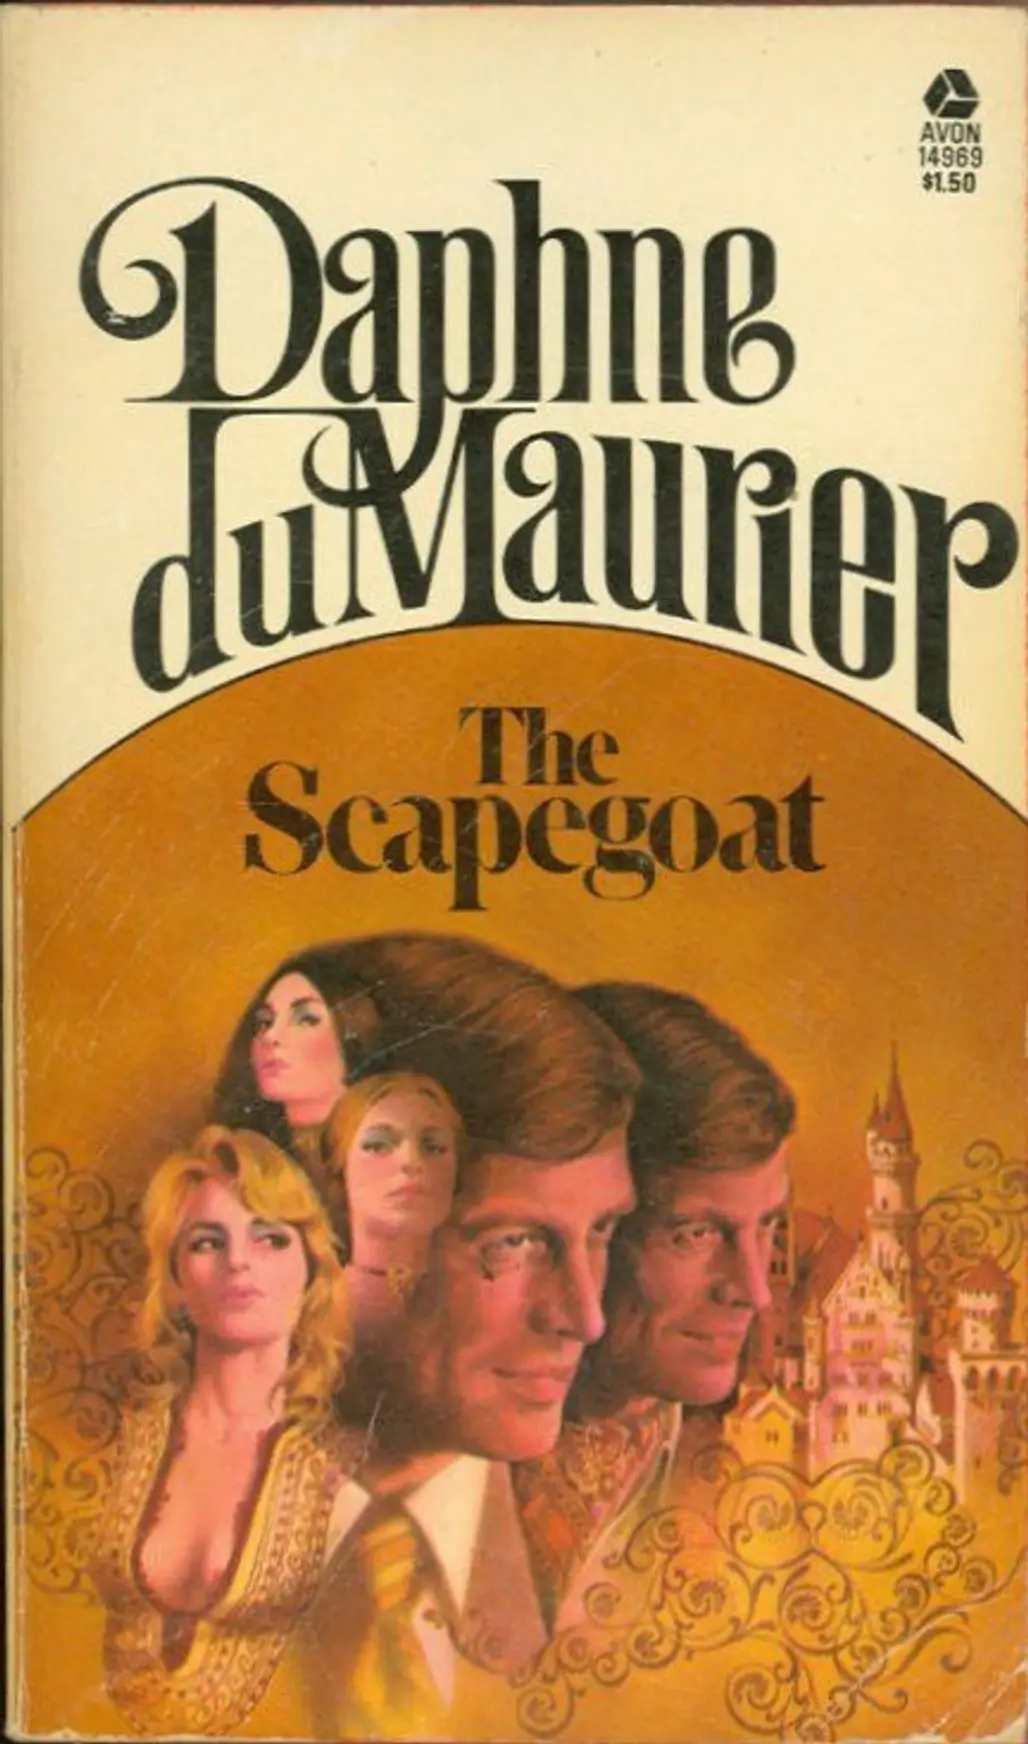 The Scapegoat by Daphne Du Maurier